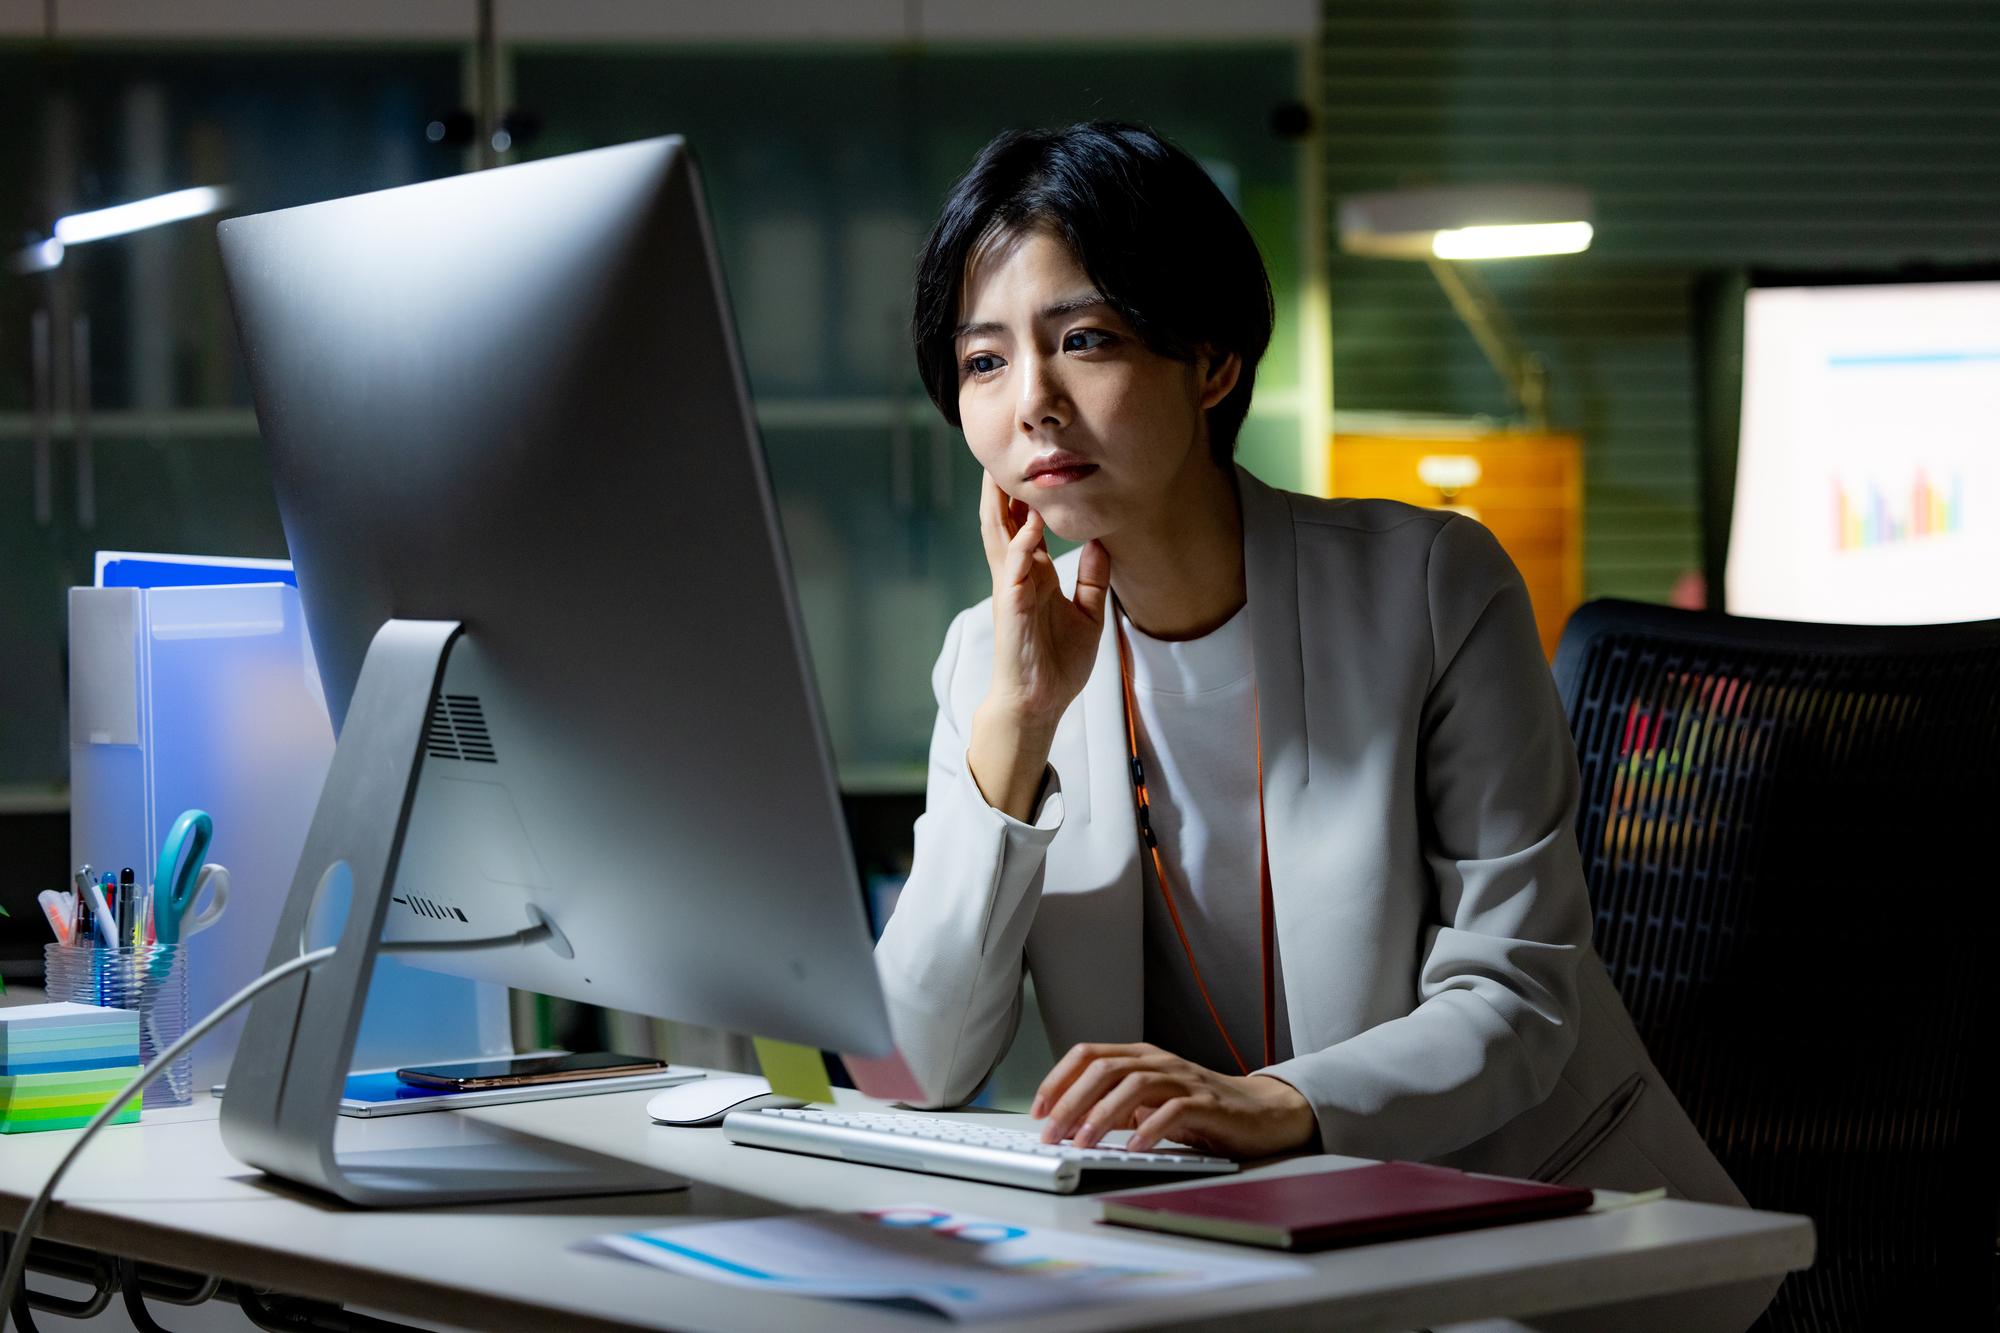 暗いオフィス内で、デスクトップPCに向かって片肘をつき悩ましげな表情を浮かべる女性